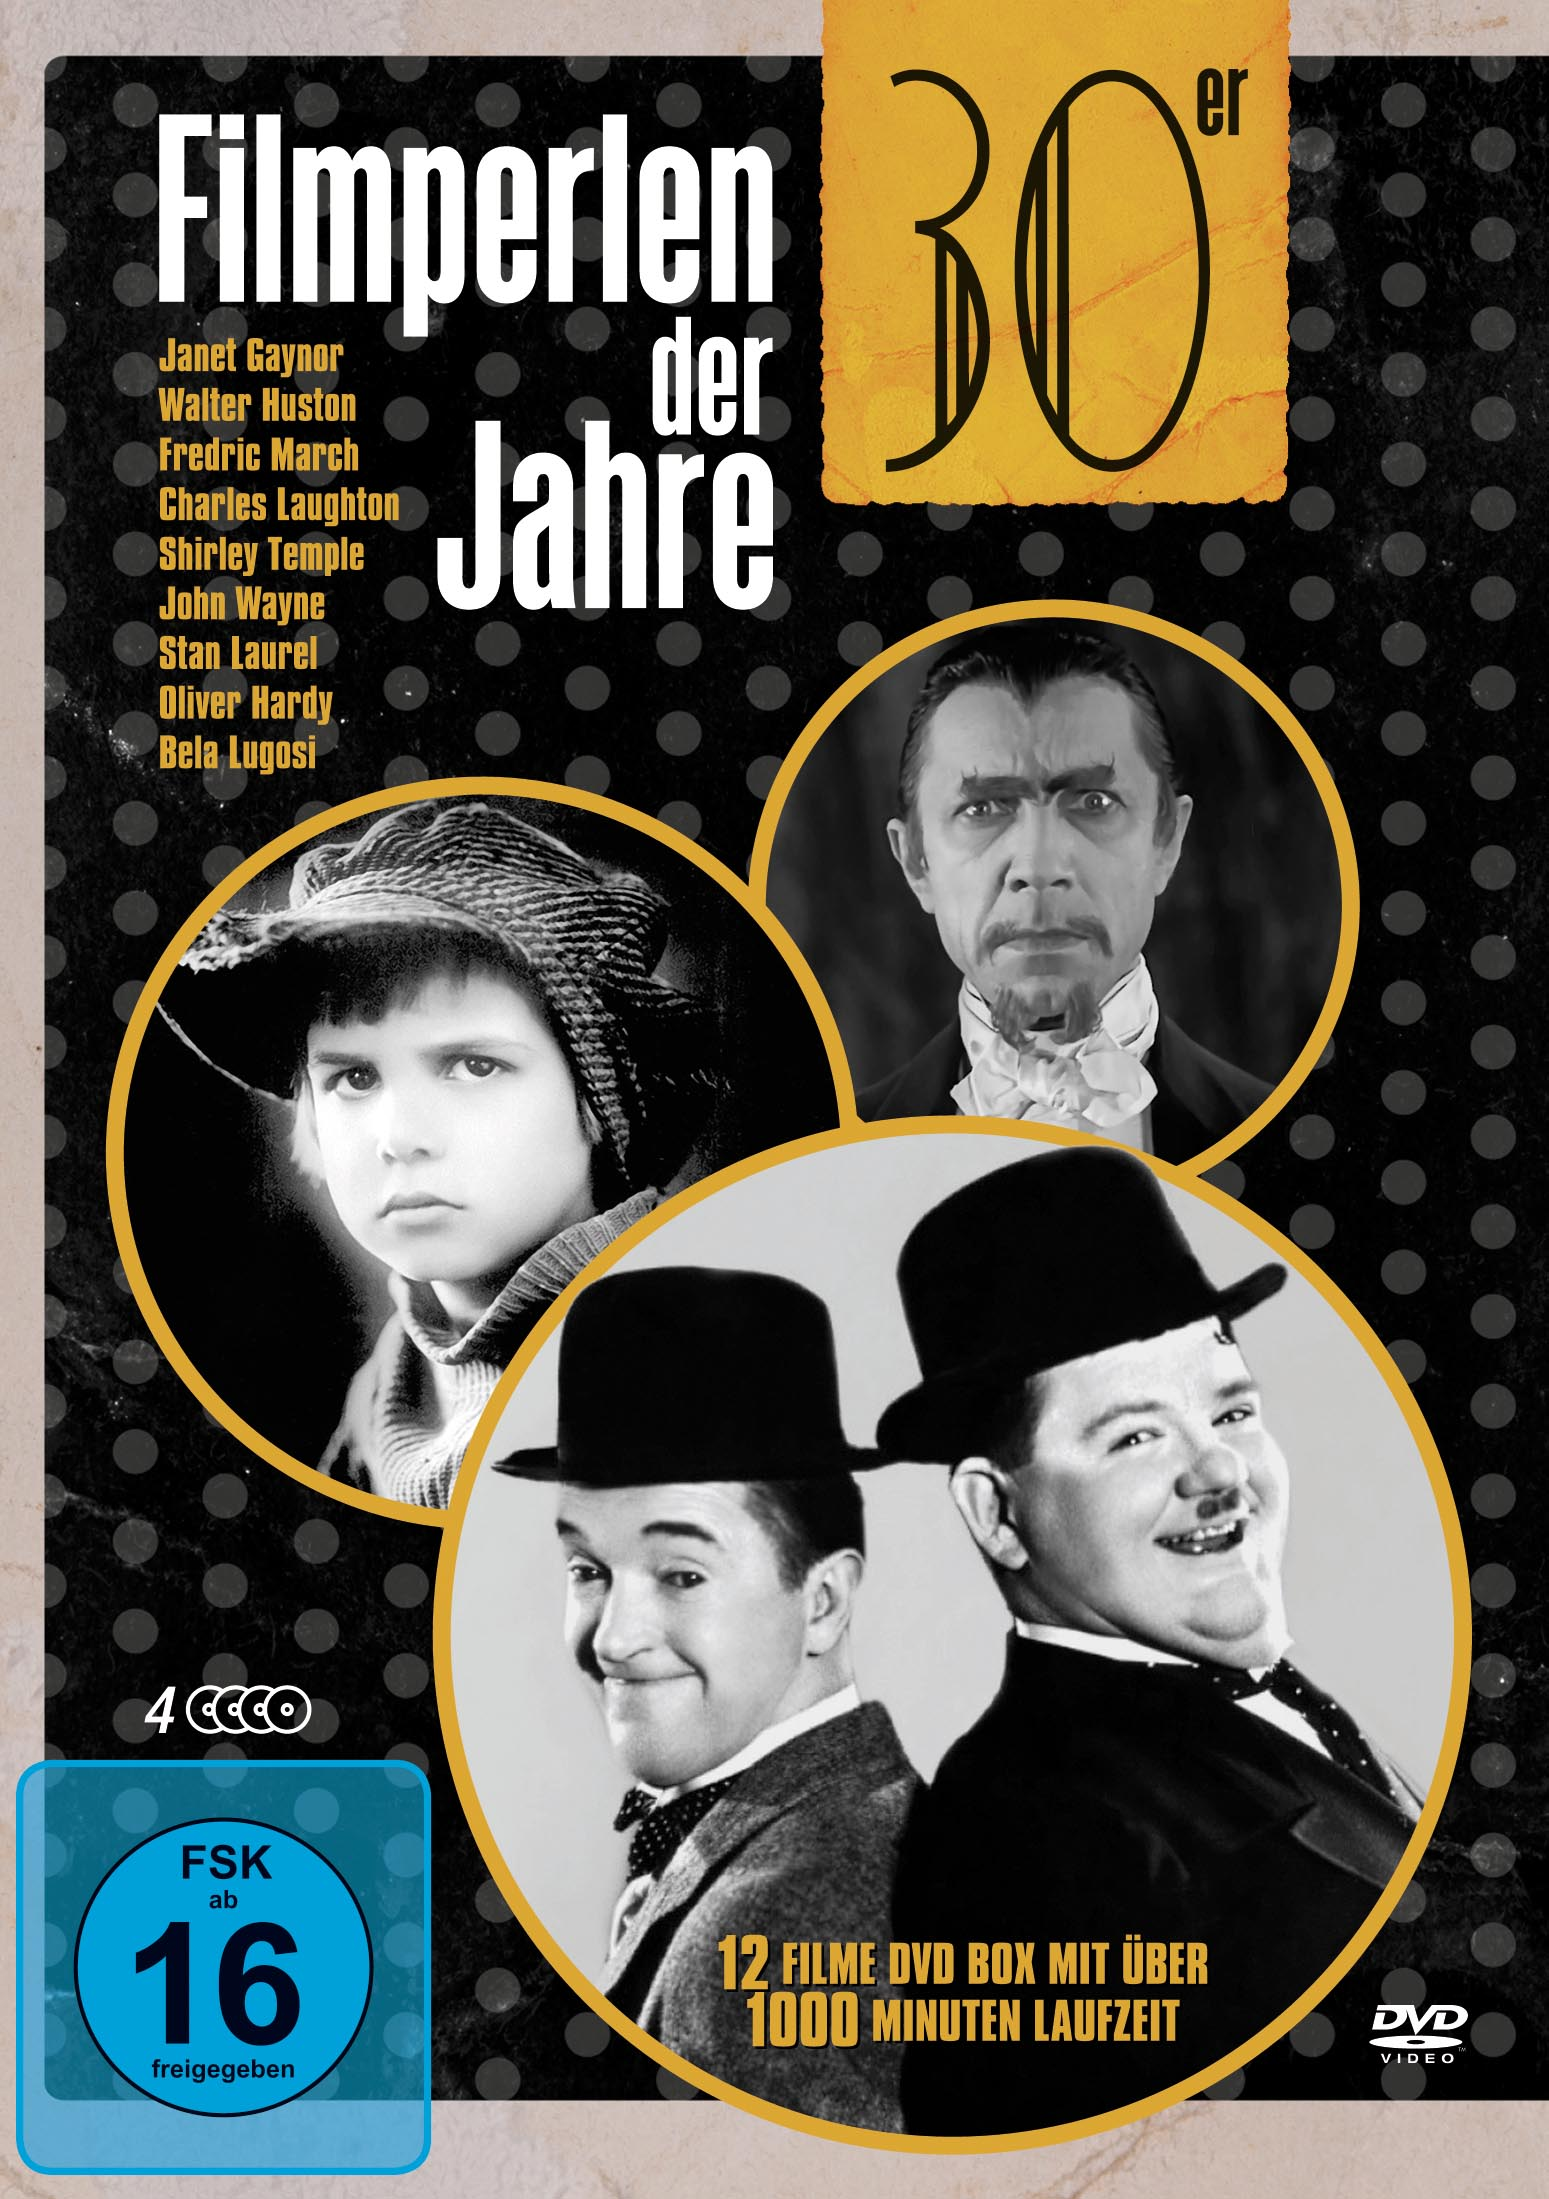 Filmperlen Der Box (4 Jahre-Deluxe DVDS) DVD 30er